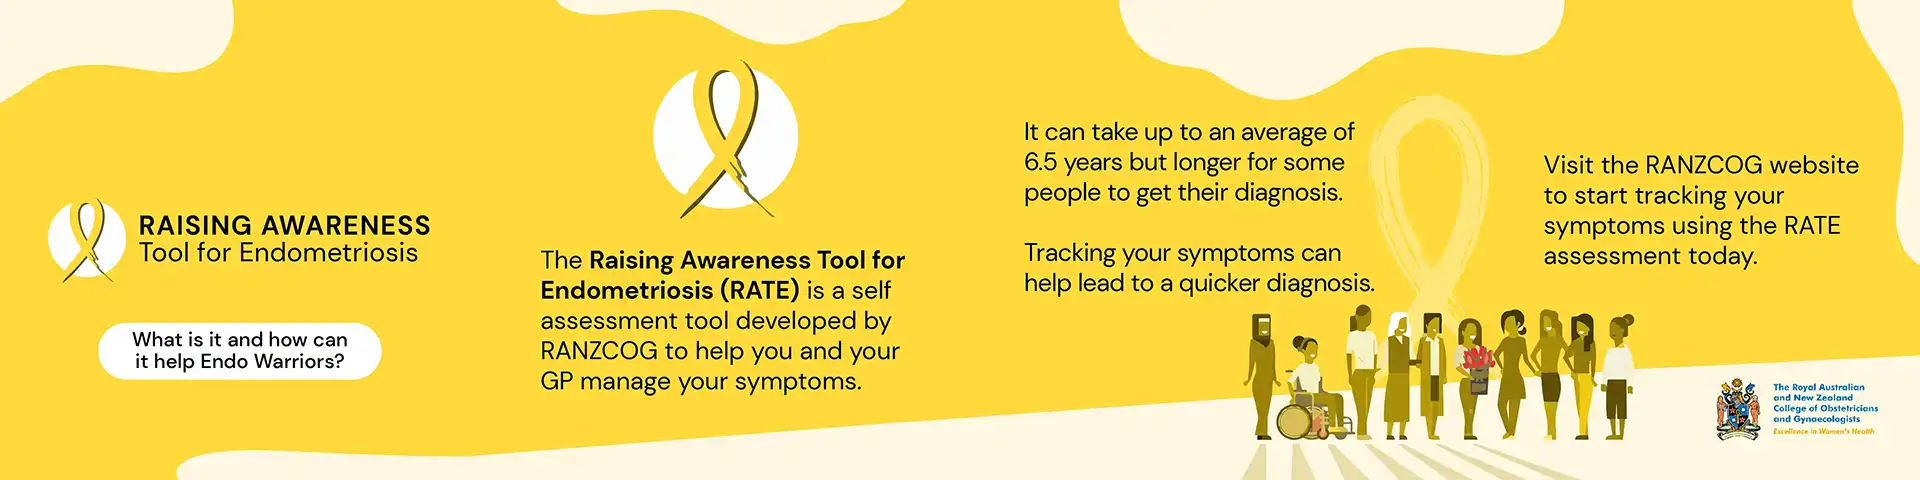 Endometriosis Raising Awareness Tool Image